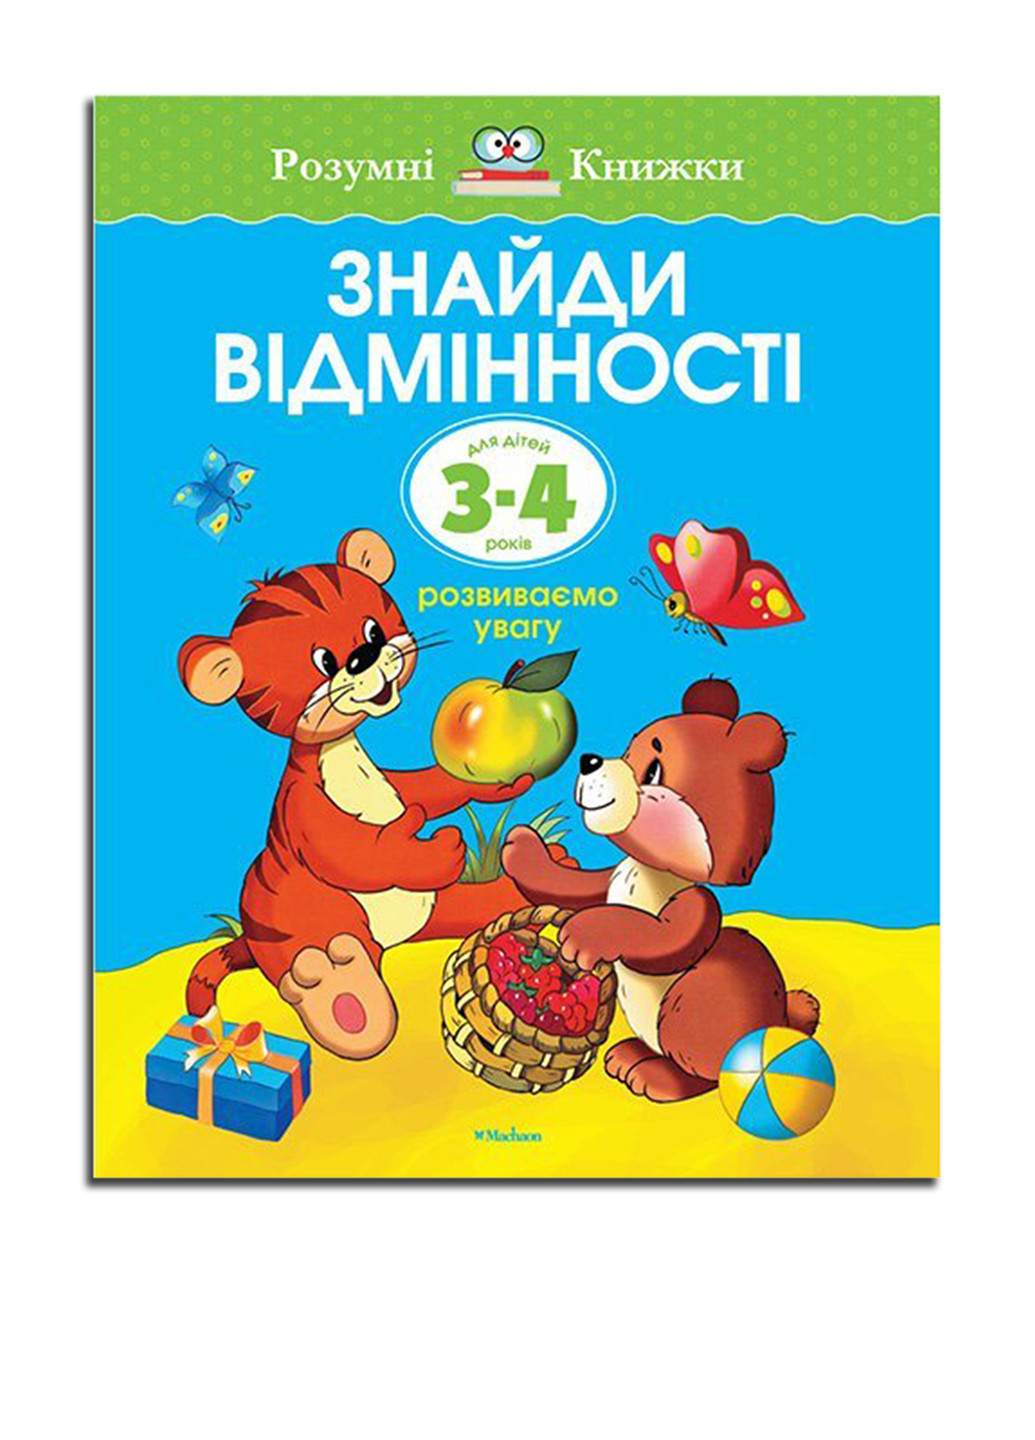 Книга "Найдите отличия. Для детей 3-4 лет" Издательство "Махаон" (16955323)